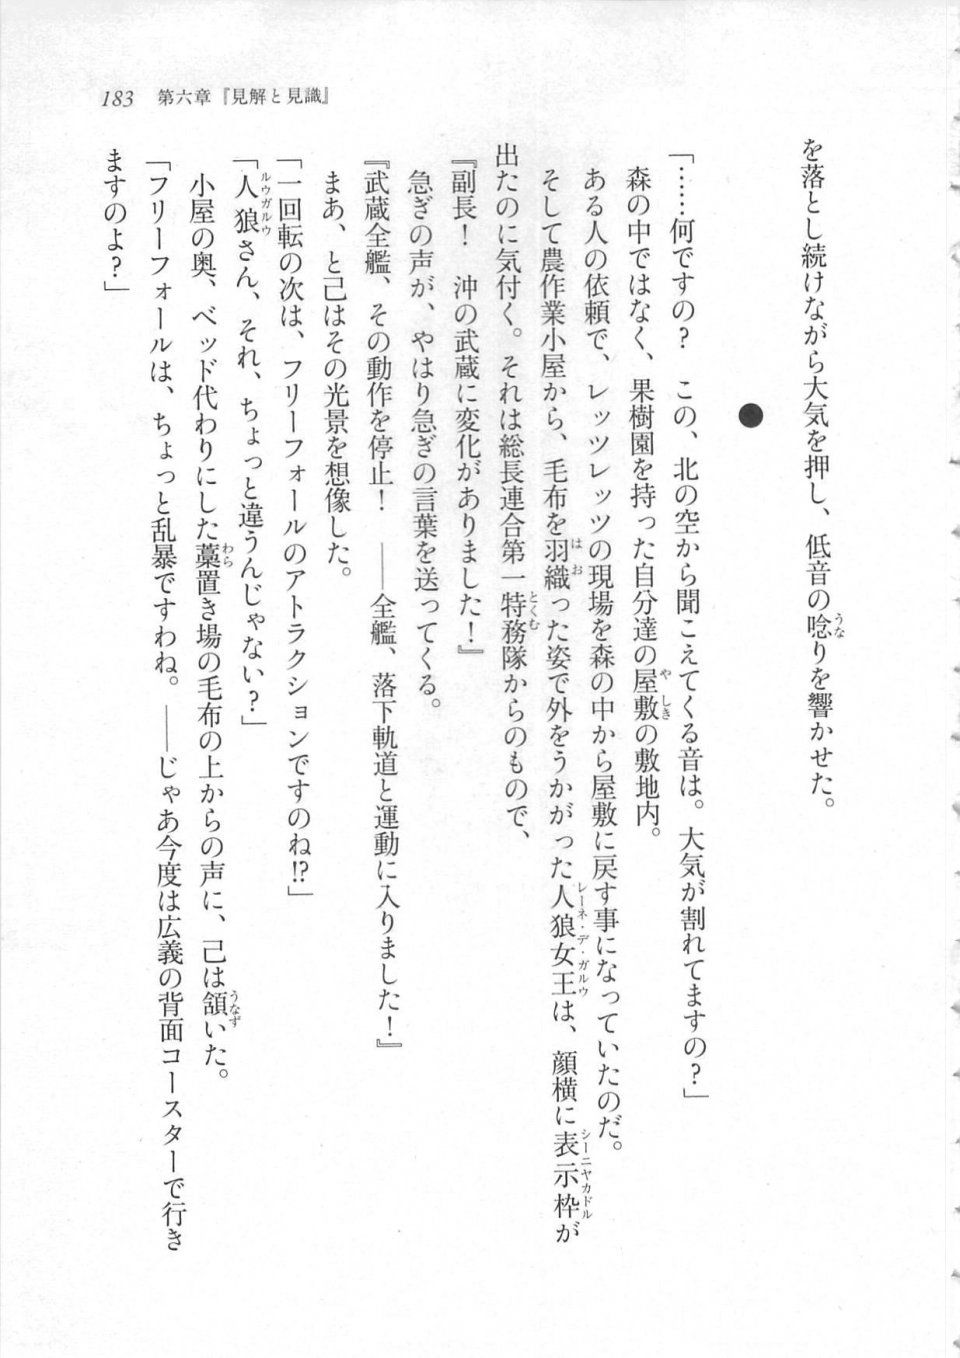 Kyoukai Senjou no Horizon LN Sidestory Vol 3 - Photo #187